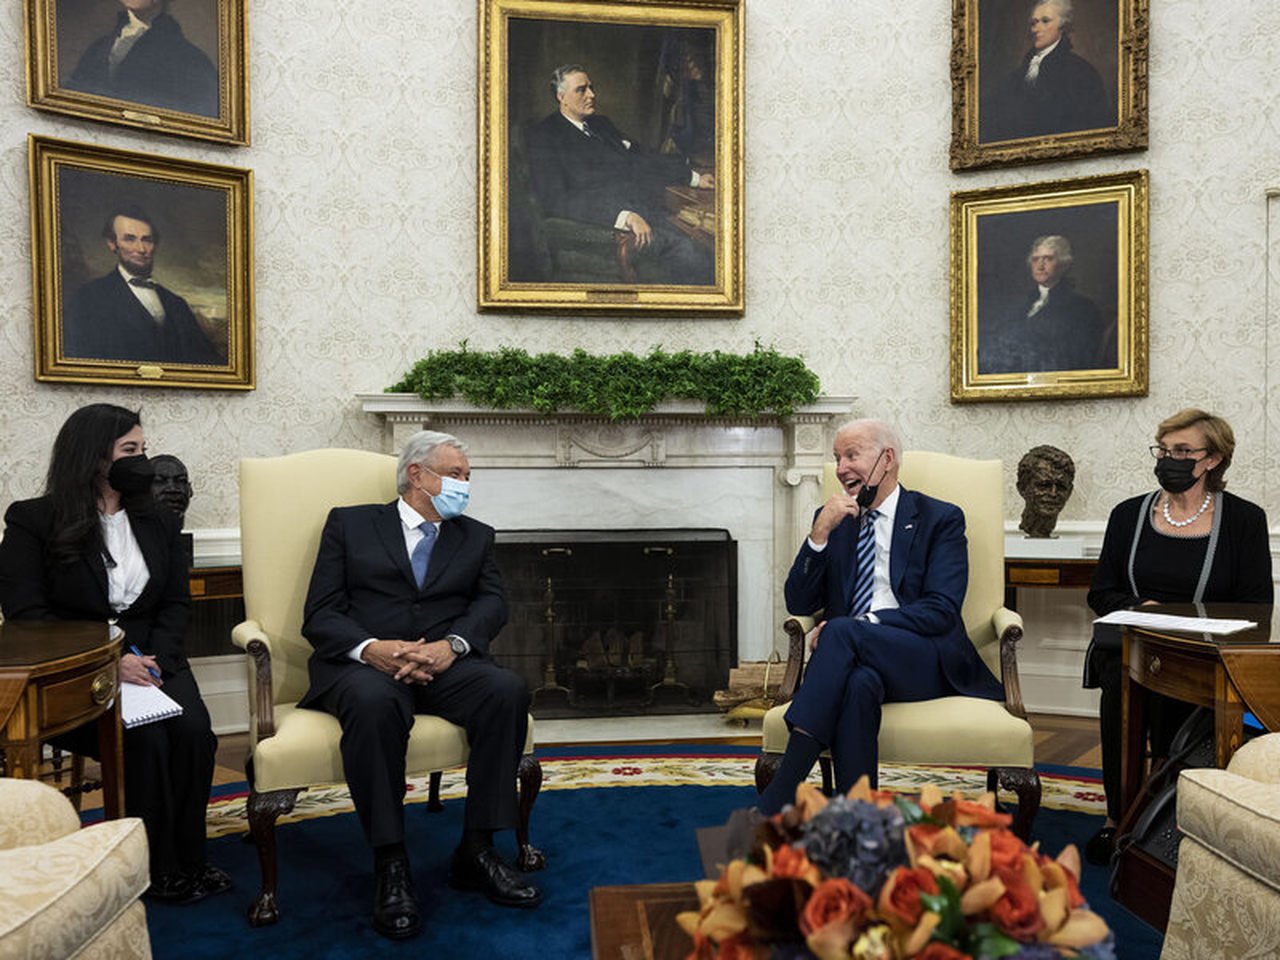 El presidente mexicano, Andrés Manuel López Obrador, a la izquierda, reunido con su homólogo estadounidense Joe Biden, en noviembre pasado en la Casa Blanca. Foto: Pool / AP / Archivo.